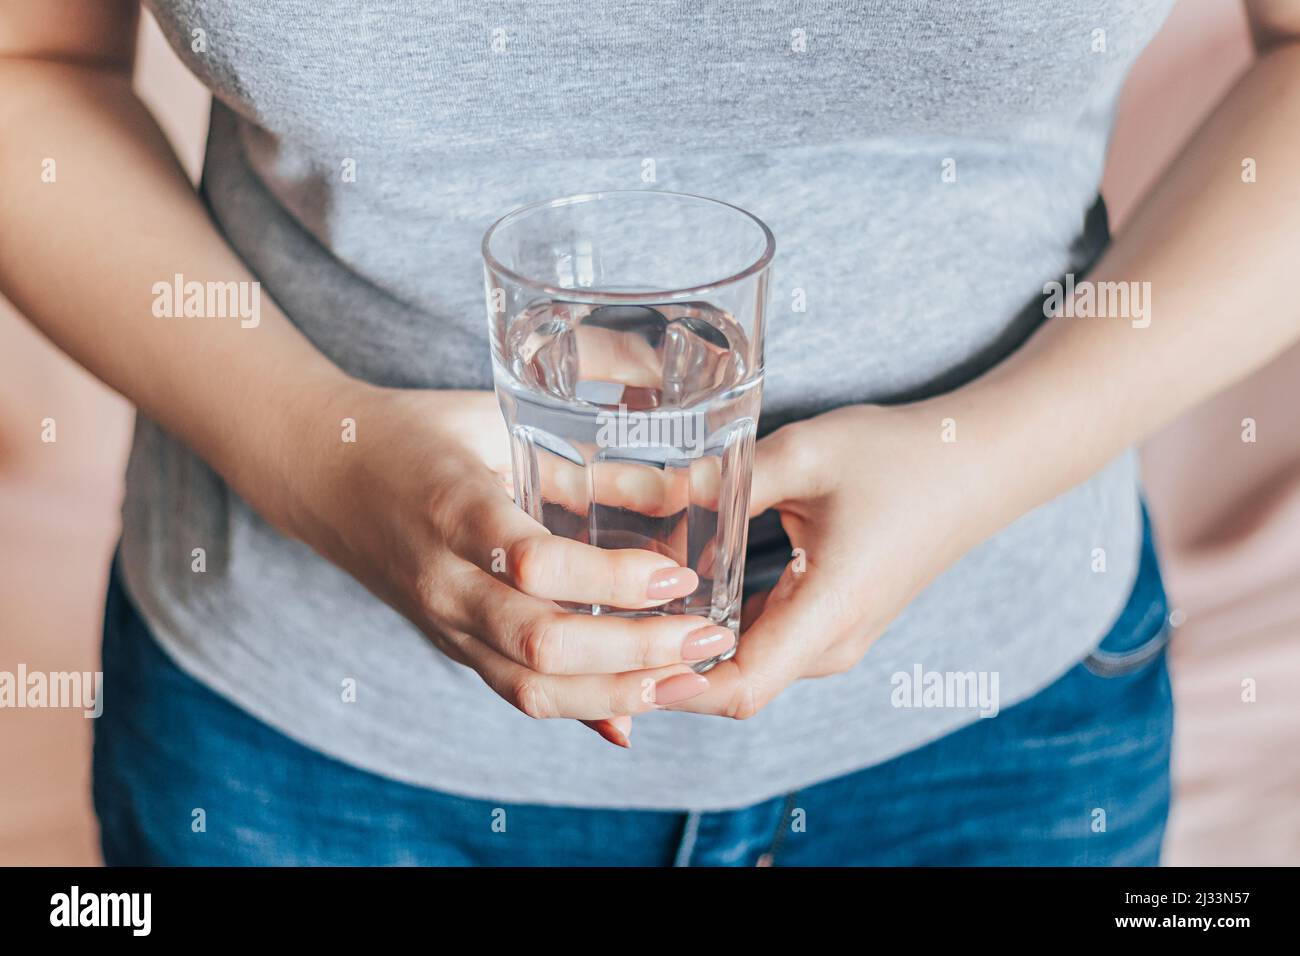 Journée mondiale de l'eau. Elle tient un verre d'eau propre dans ses mains. Concept de soins de santé. Boire de l'eau le matin pour stimuler le métabolisme. Banque D'Images